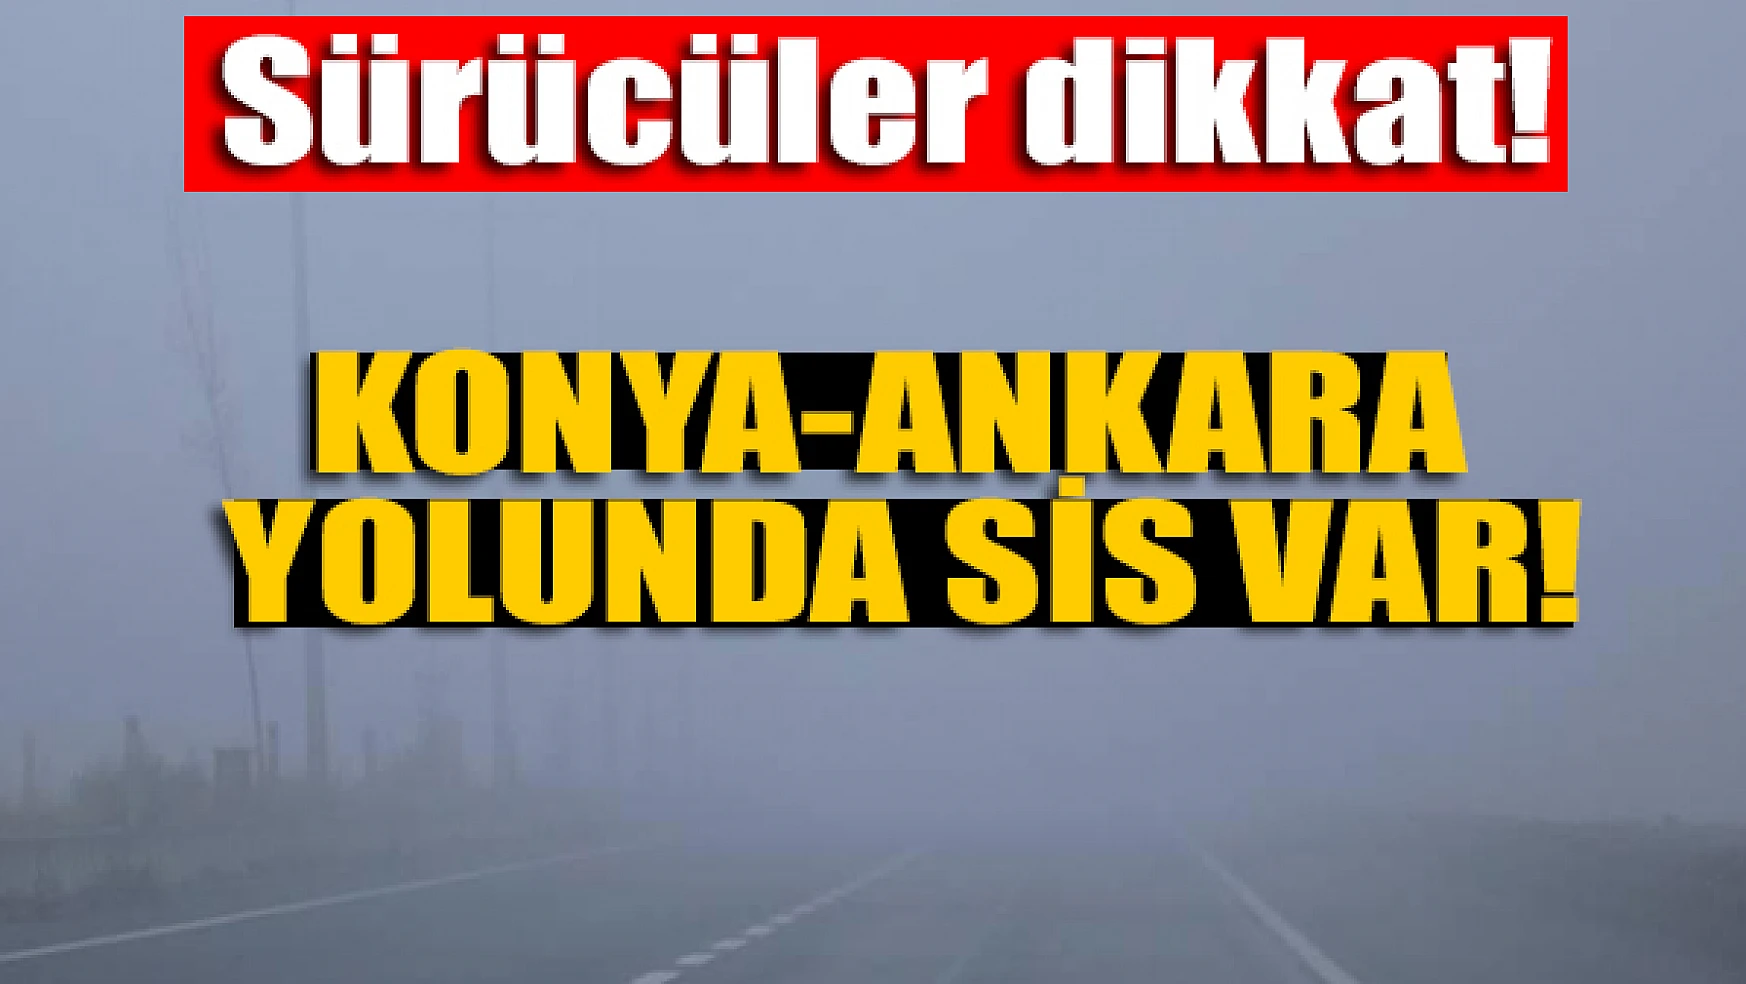 Sürücüler dikkat! Konya-Ankara yolunda sis var!